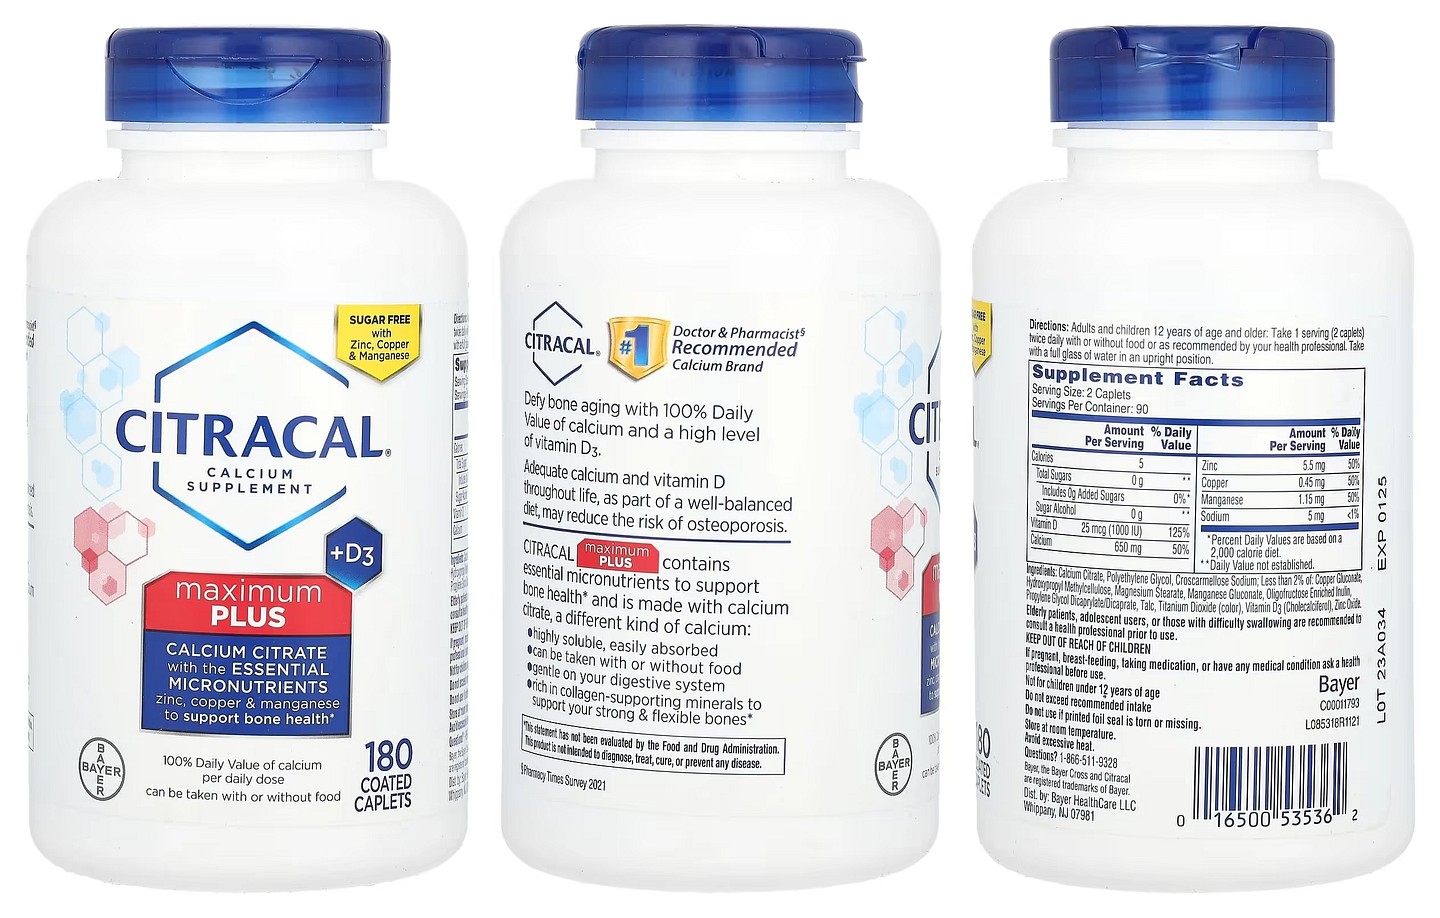 Citracal, Maximum Plus +D3 packaging